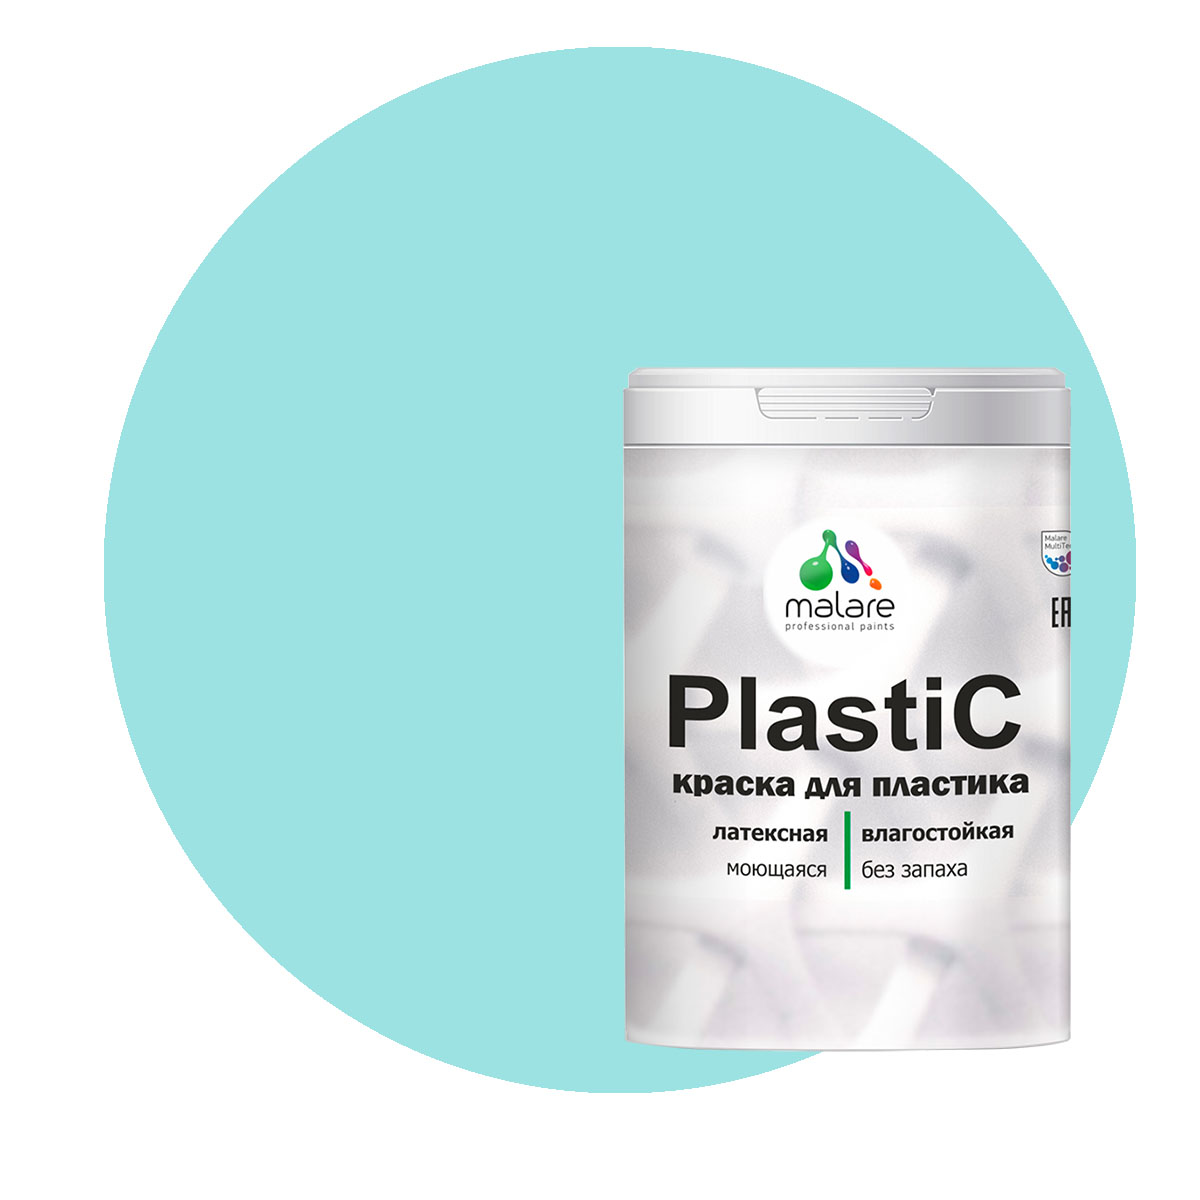 Краска Malare PlastiC для пластика, ПВХ, для сайдинга, аквамарин, 1 кг. аквафор аквамарин